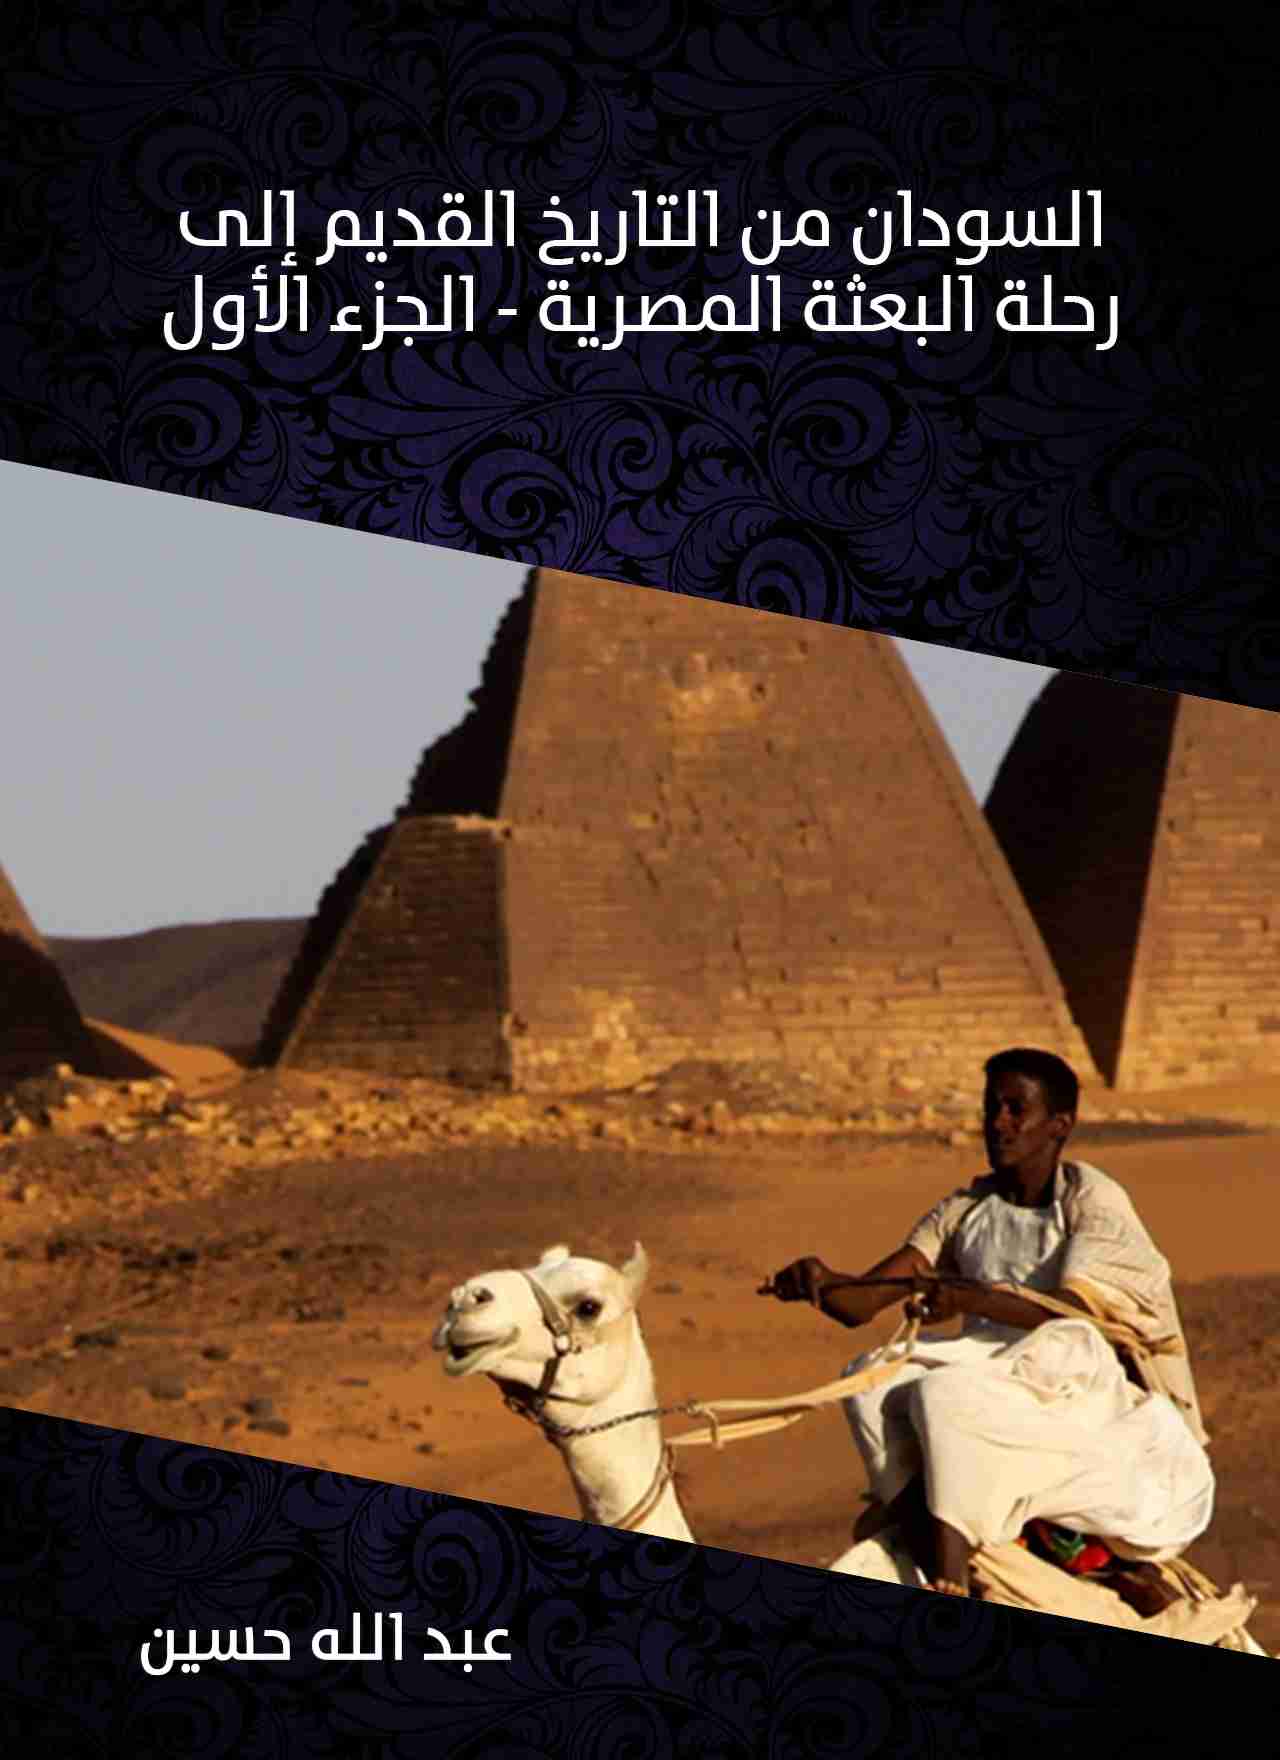 تحميل كتاب السودان من التاريخ القديم إلى رحلة البعثة المصرية الجزء الأول Pdf عبدالله حسين فور ريد